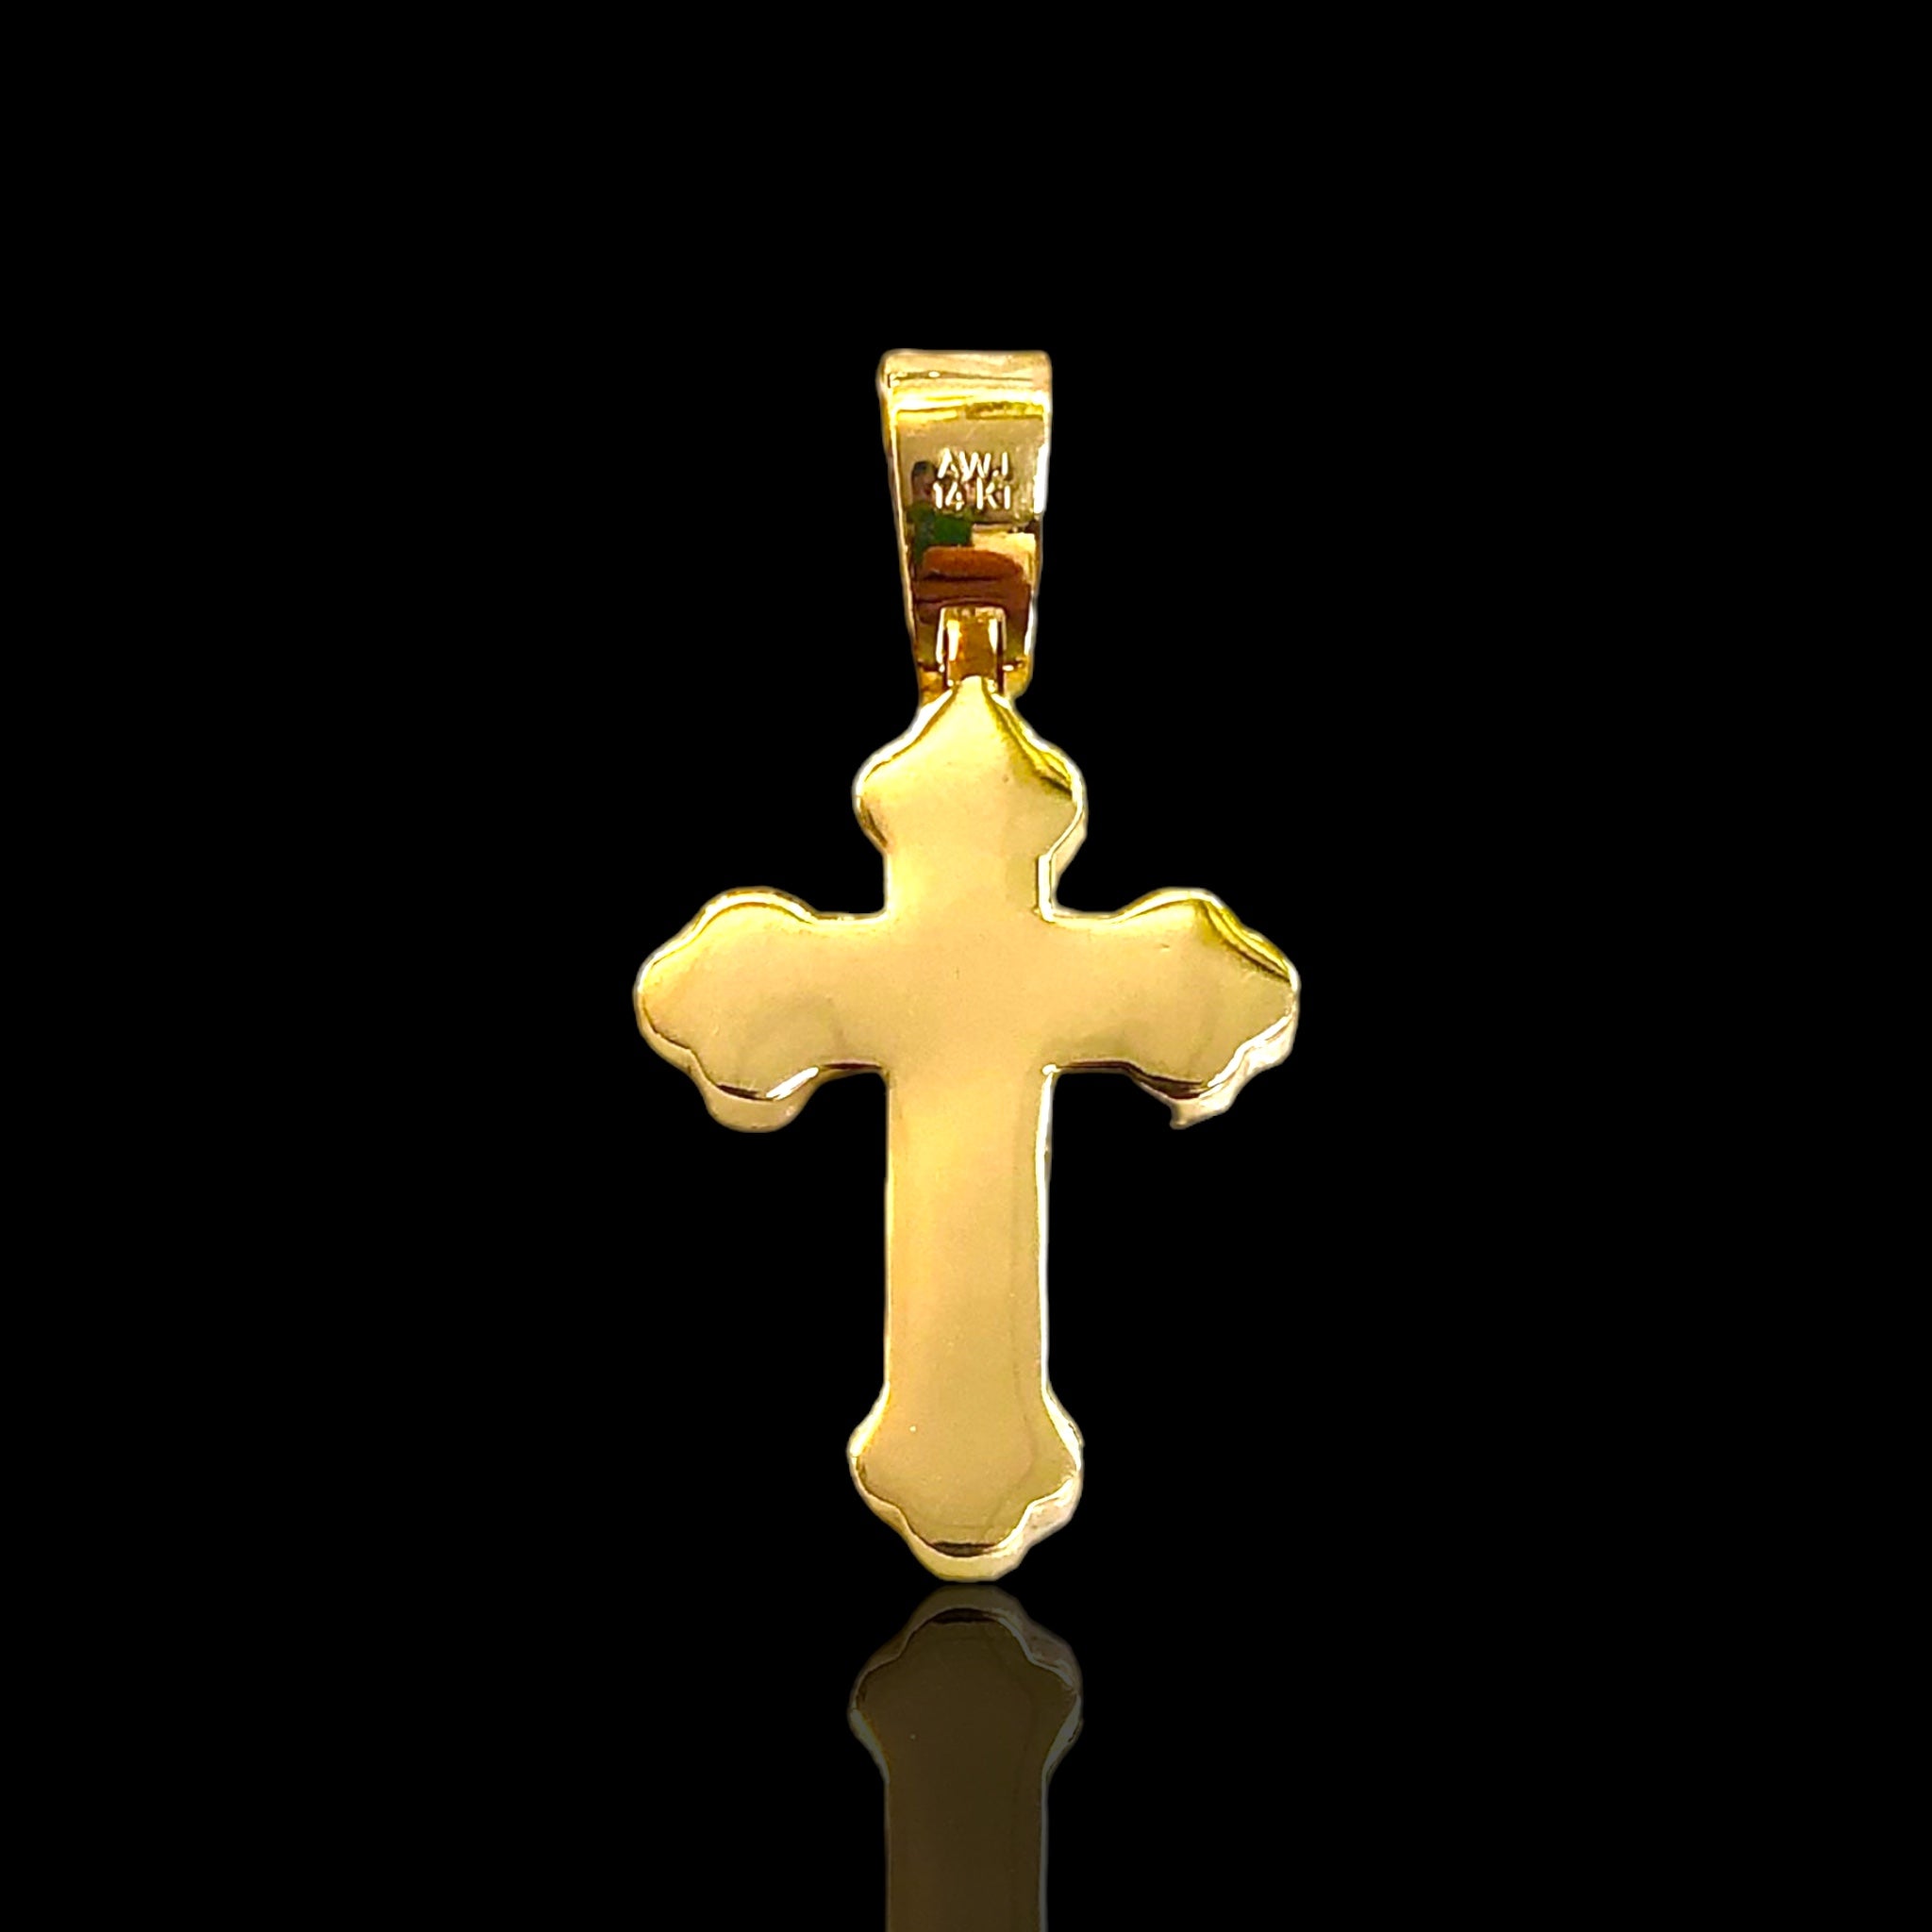 Pave Diamond Cross